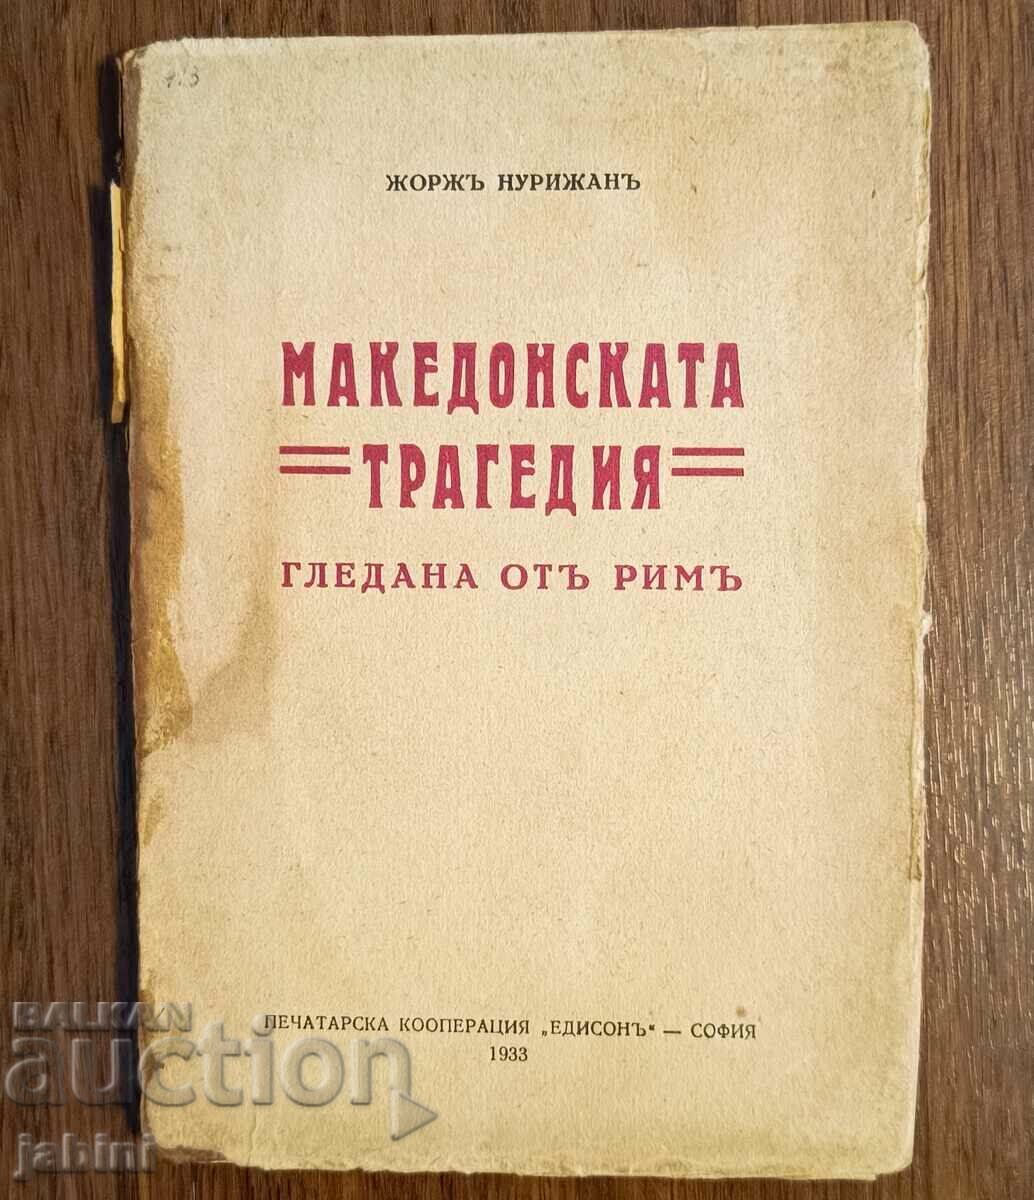 Βιβλίο Η μακεδονική τραγωδία του Georges Nurijan 1933